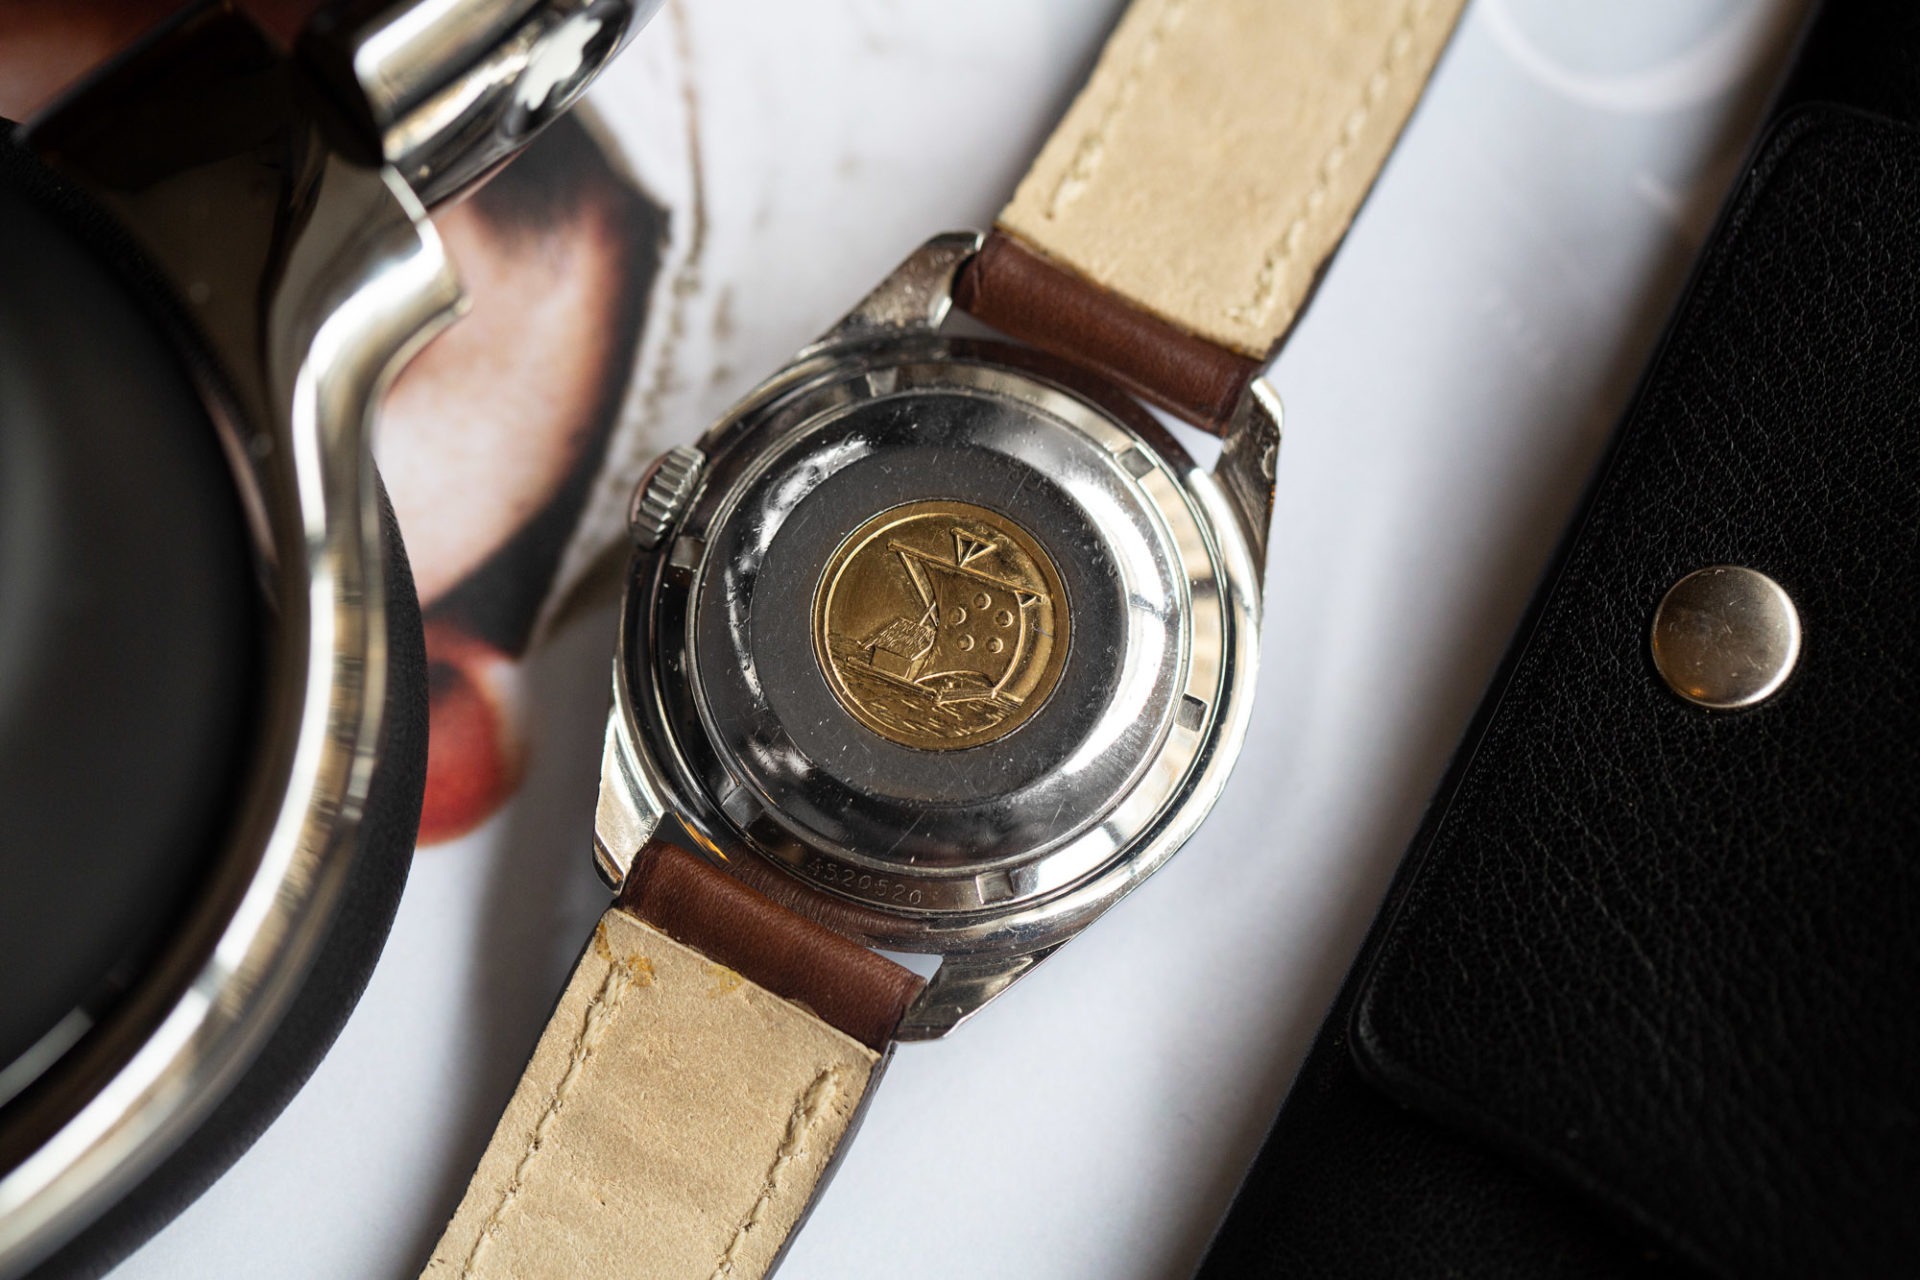 Eterna KonTiki - Sélection de montres vintage chez Joseph Bonnie